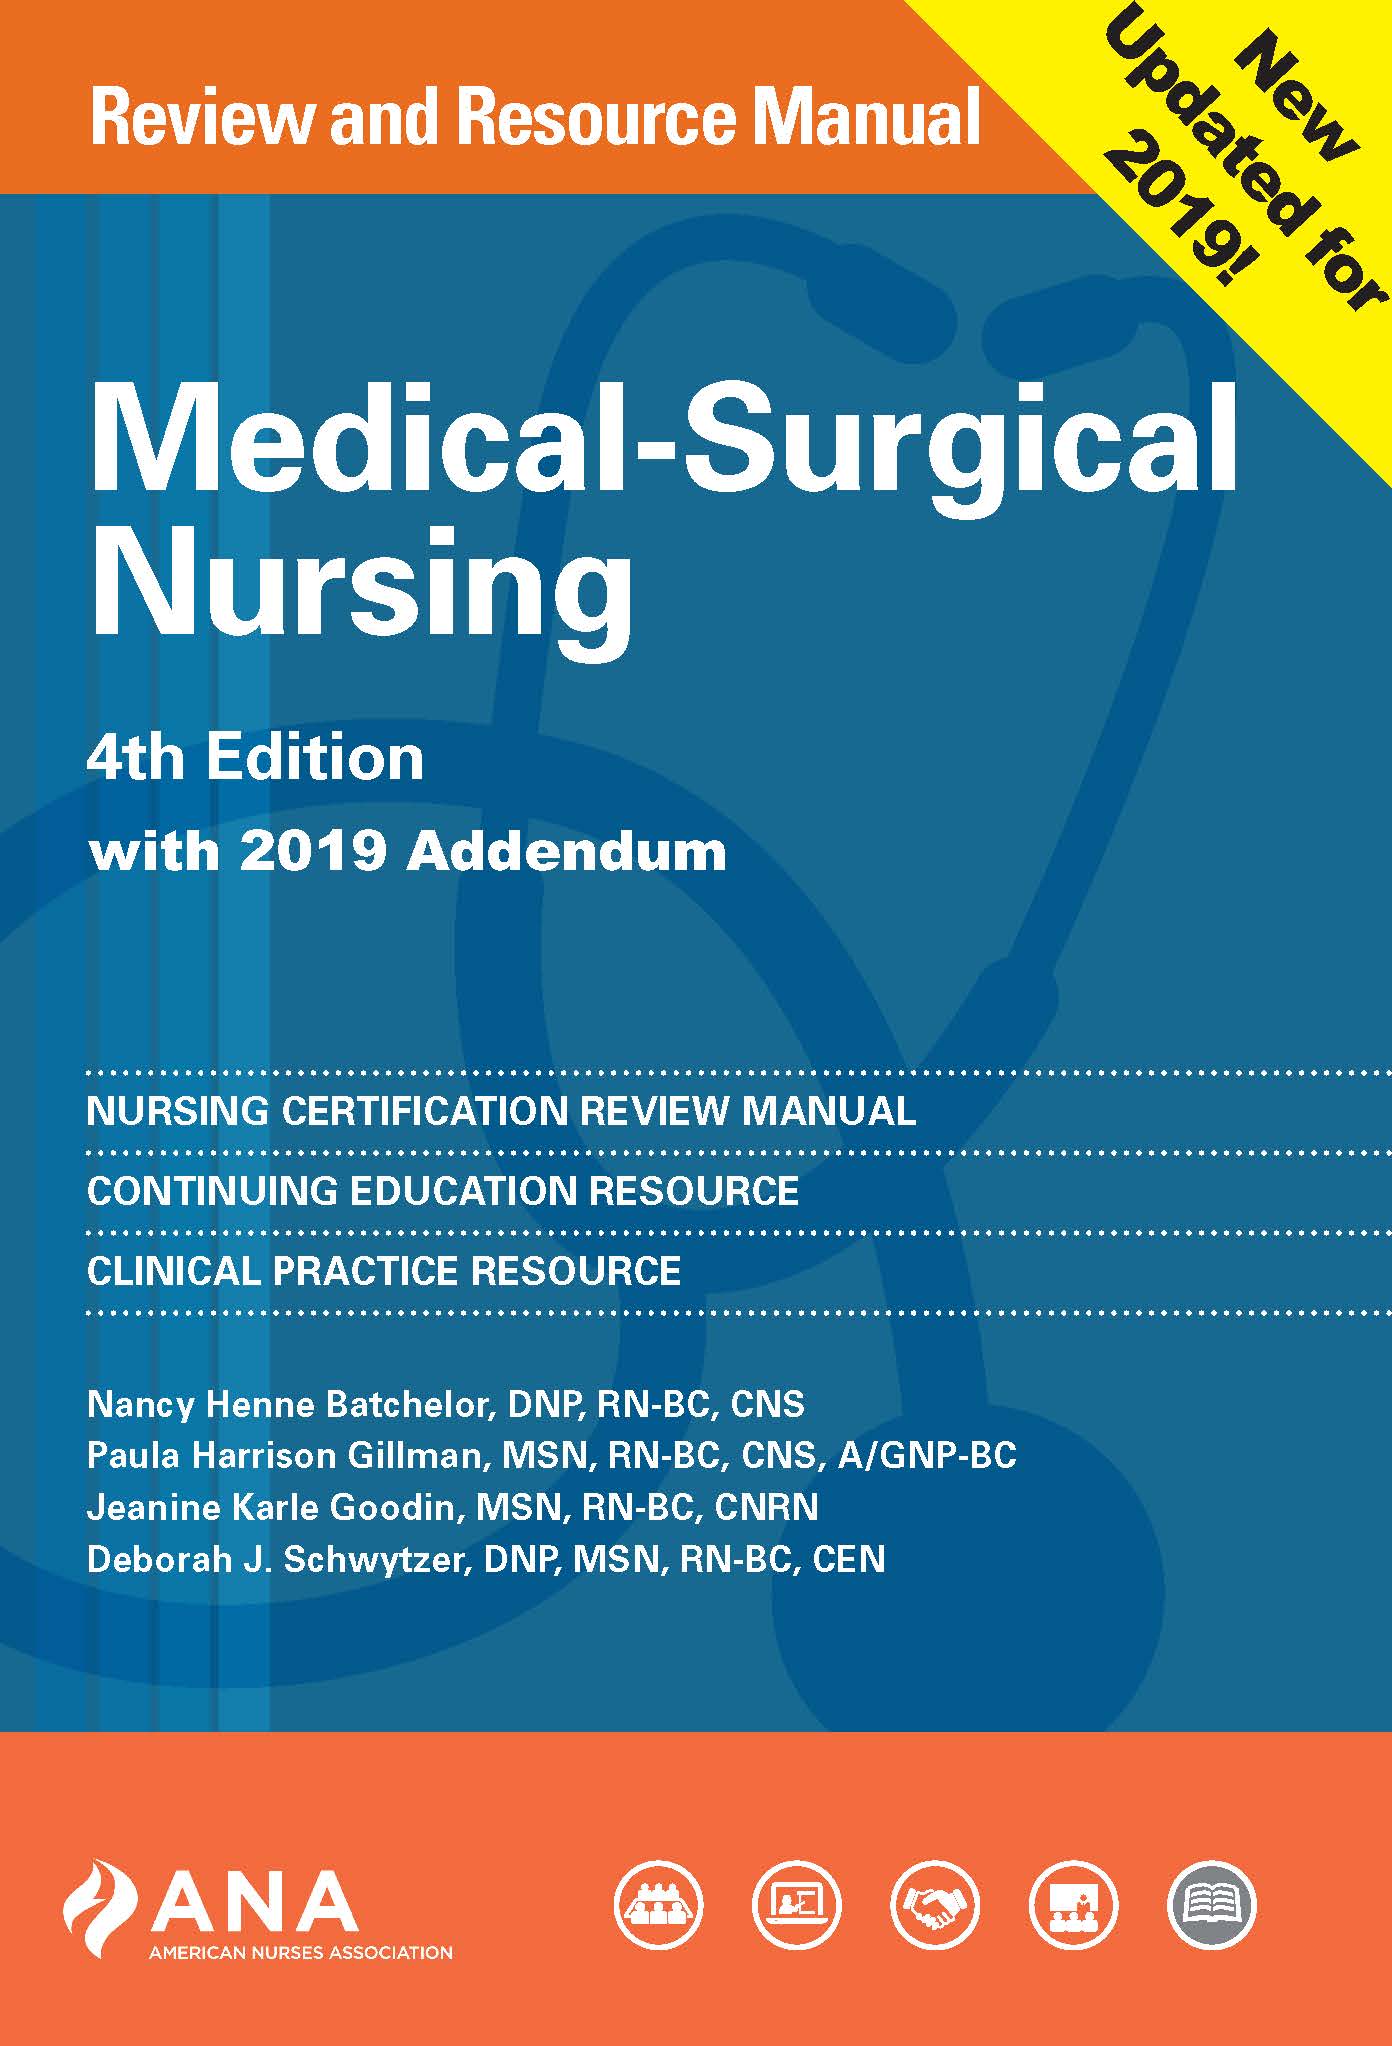 medical books for nurses